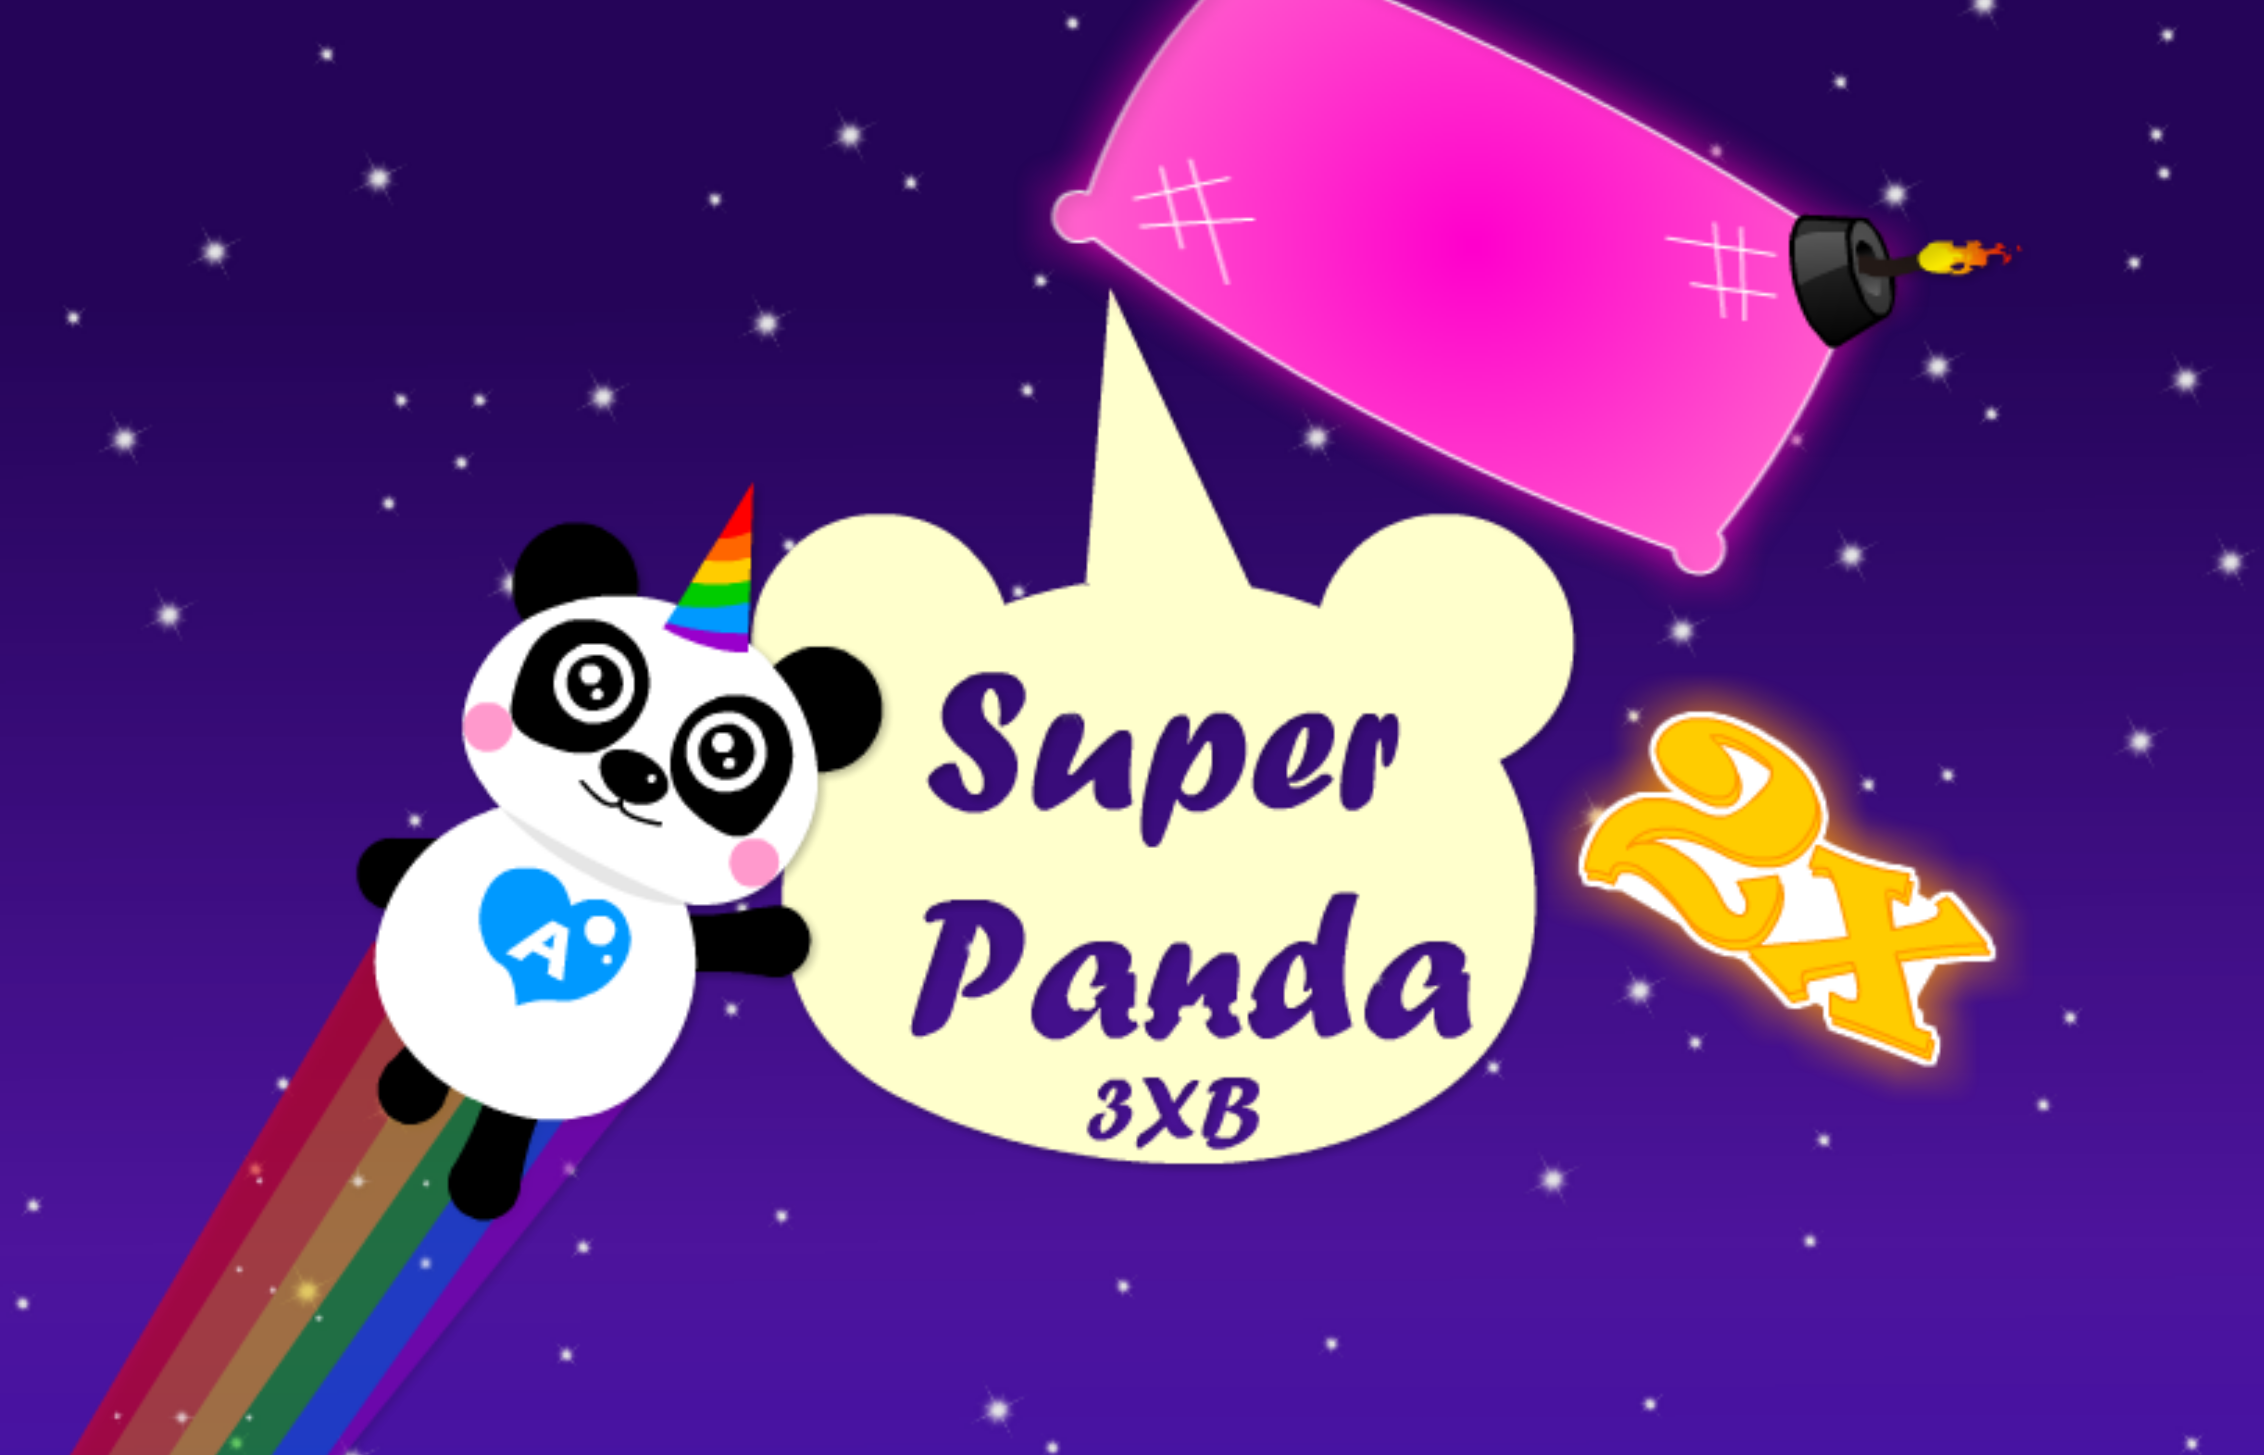 Super Panda 3xb